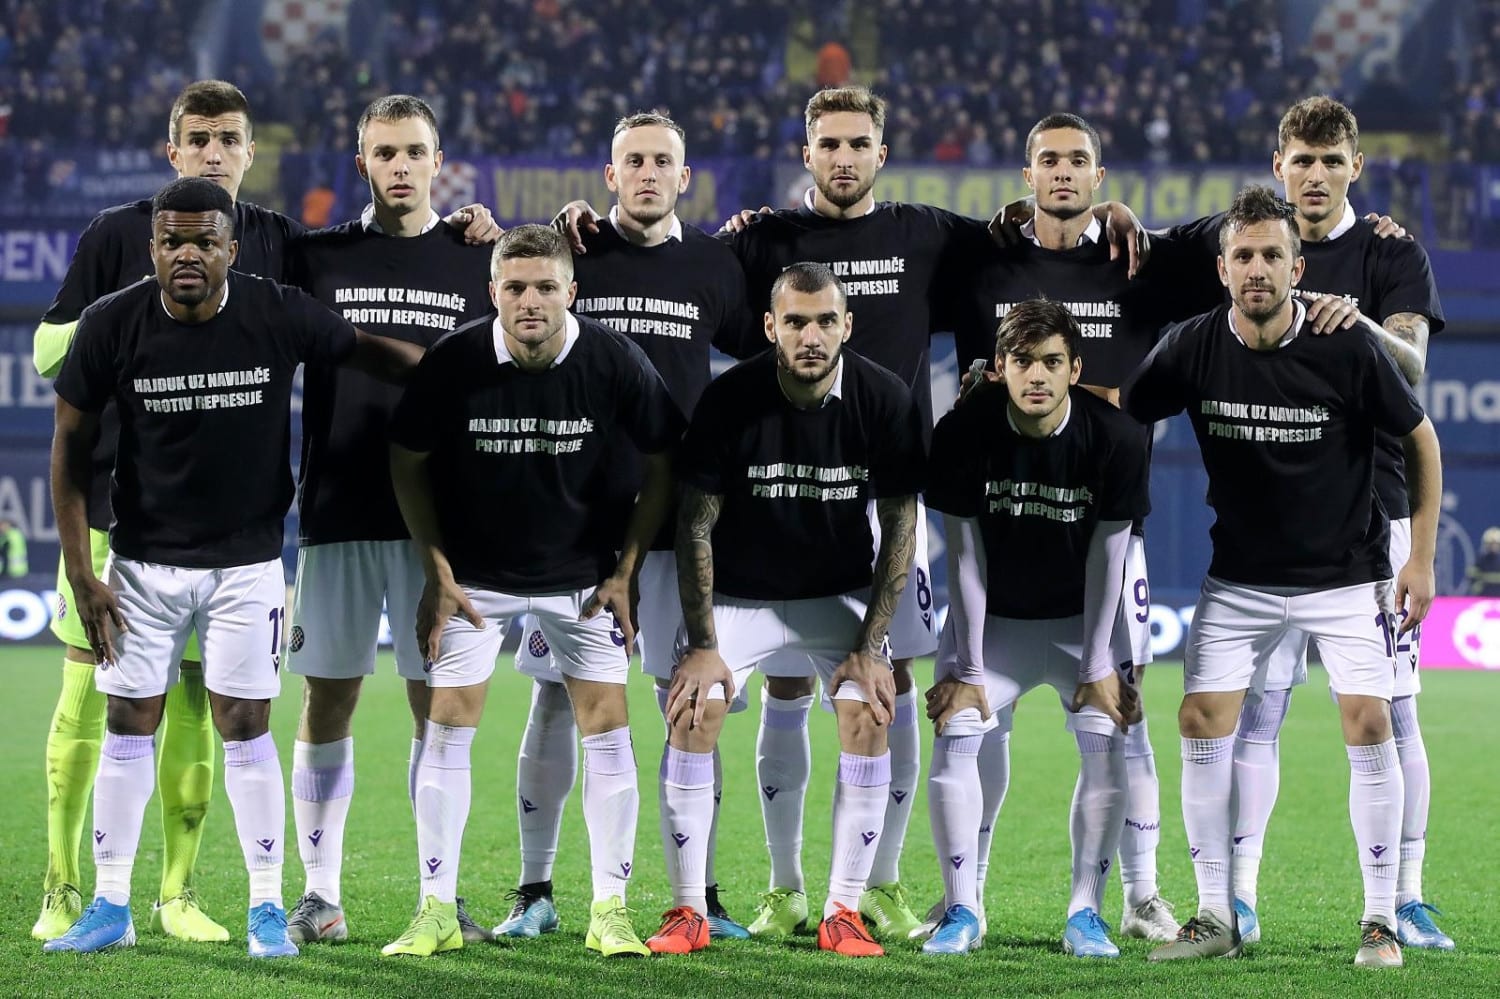 GNK Dinamo Zagreb U19 - HNK Hajduk Split U19 placar ao vivo, H2H e  escalações